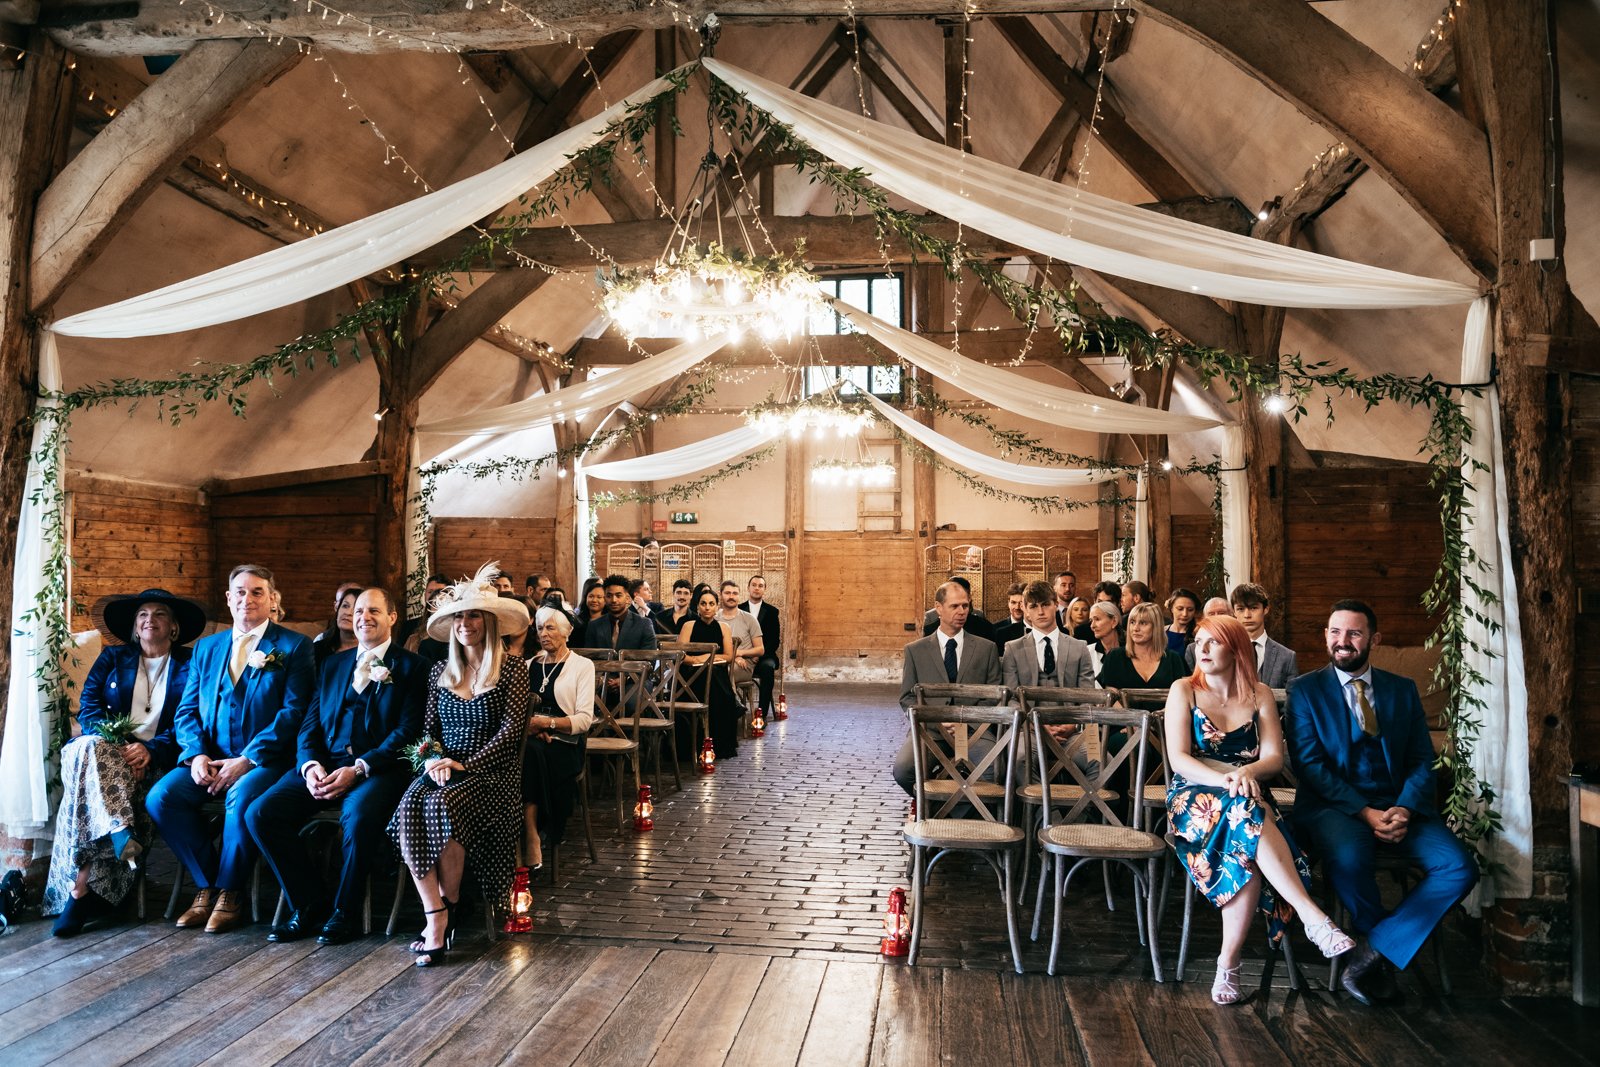 Lains barn wedding colour-9.jpg